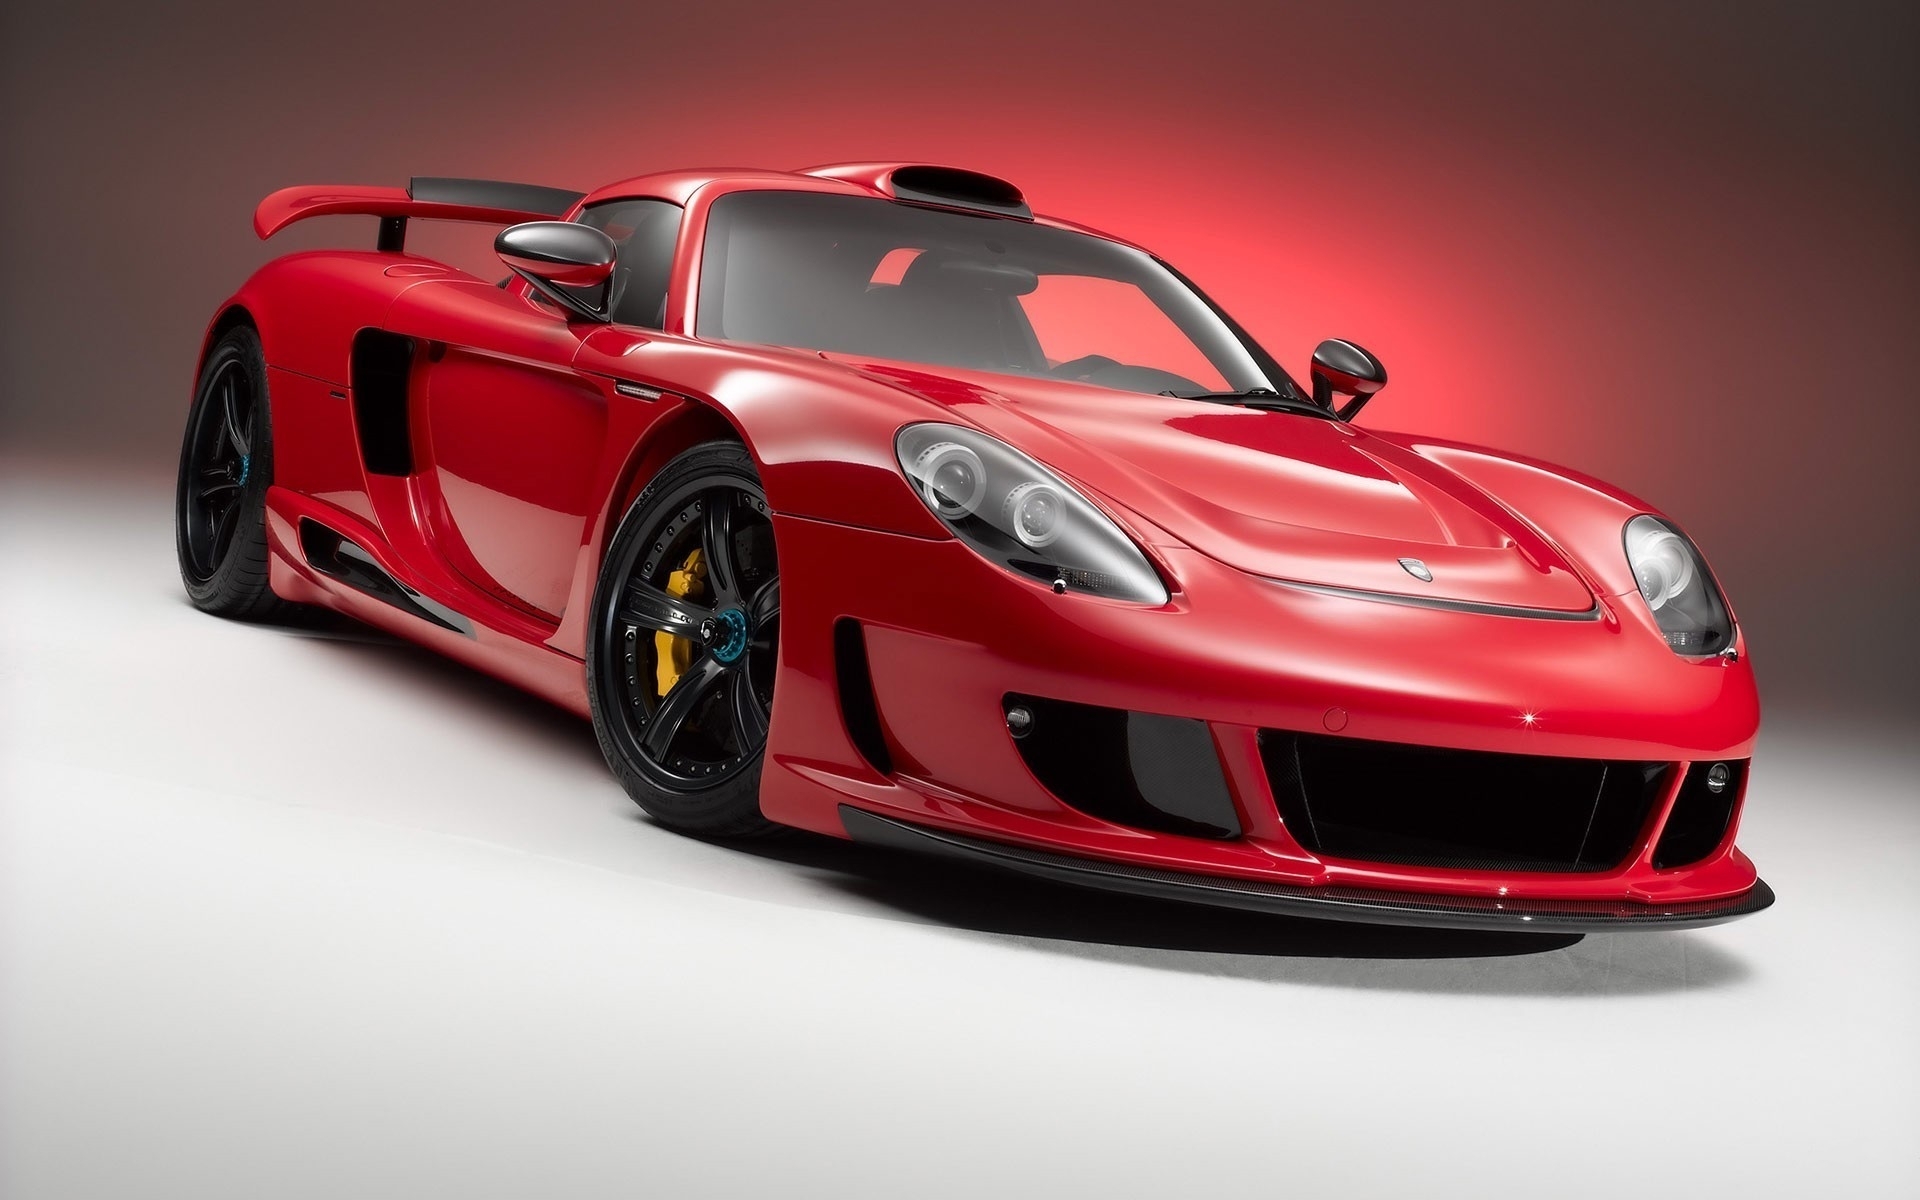 Download mobile wallpaper Ferrari, Transport, Auto for free.